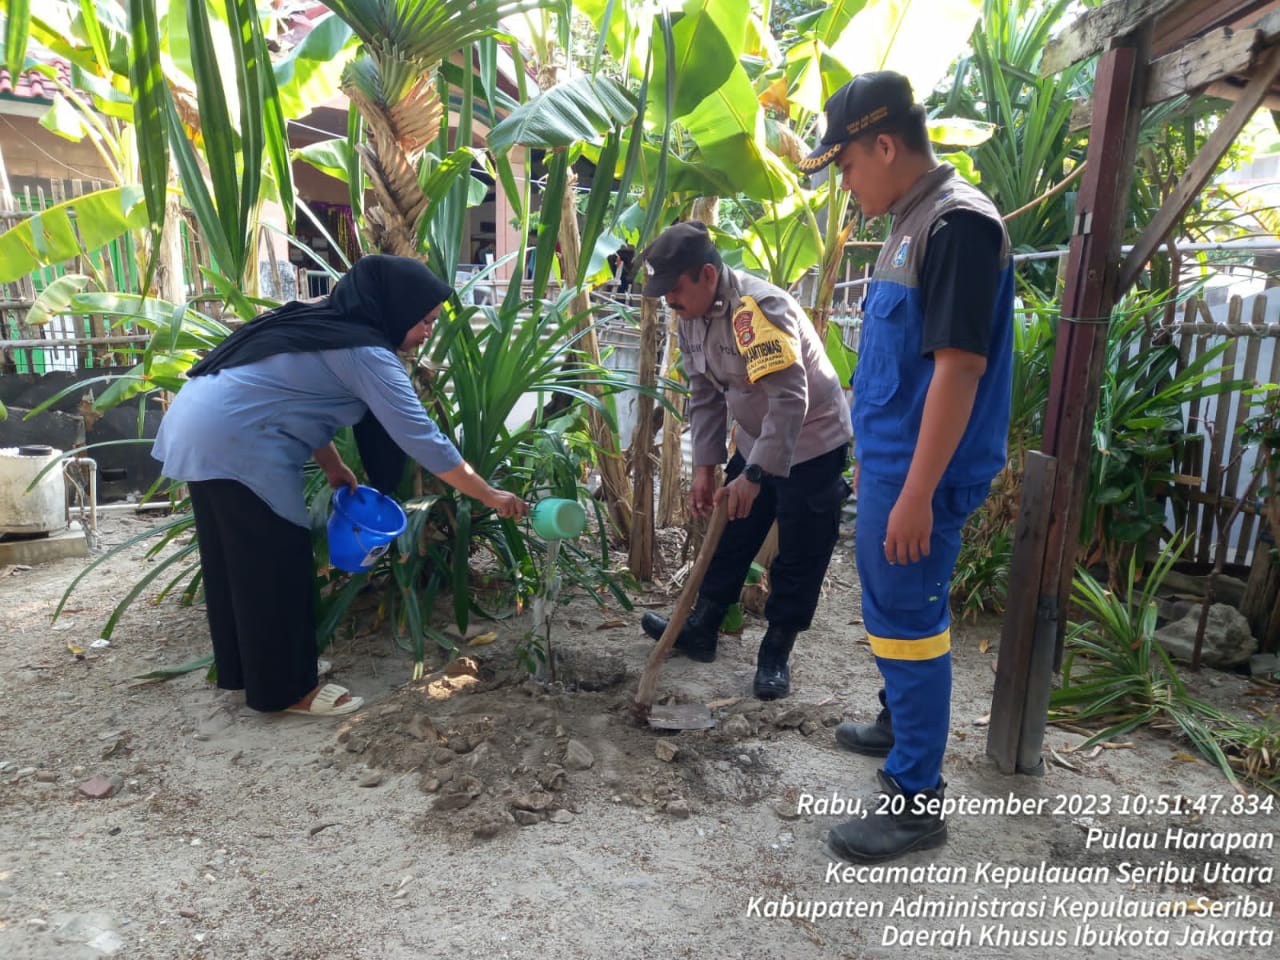 Bhabinkamtibmas Pulau Harapan dan Pemda Bersatu dalam Menanam Pohon untuk Mengurangi Polusi Udara